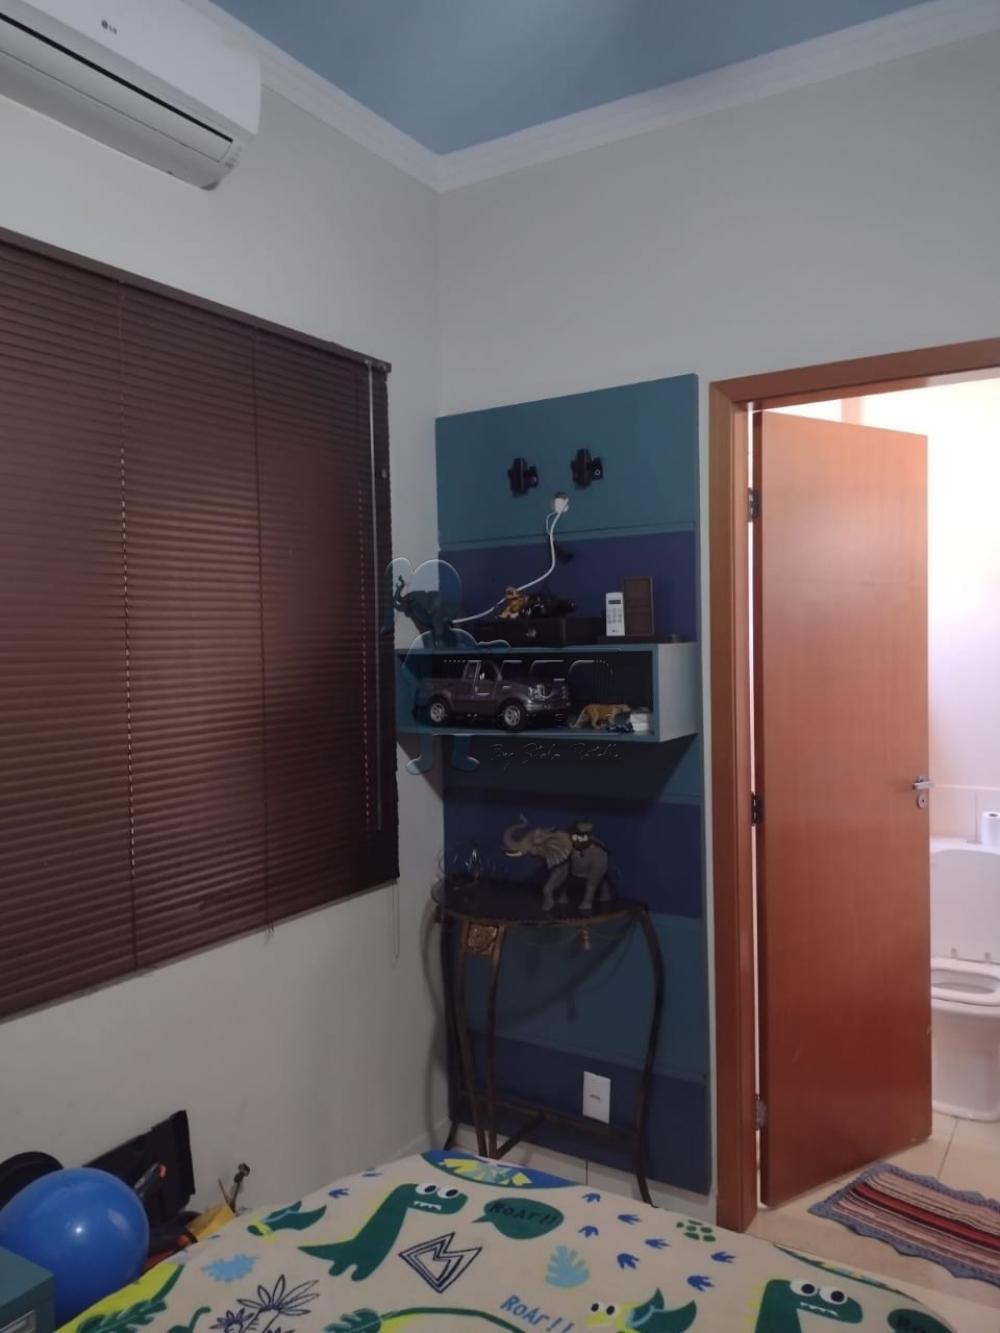 Comprar Casa condomínio / Padrão em Sertãozinho R$ 585.000,00 - Foto 14